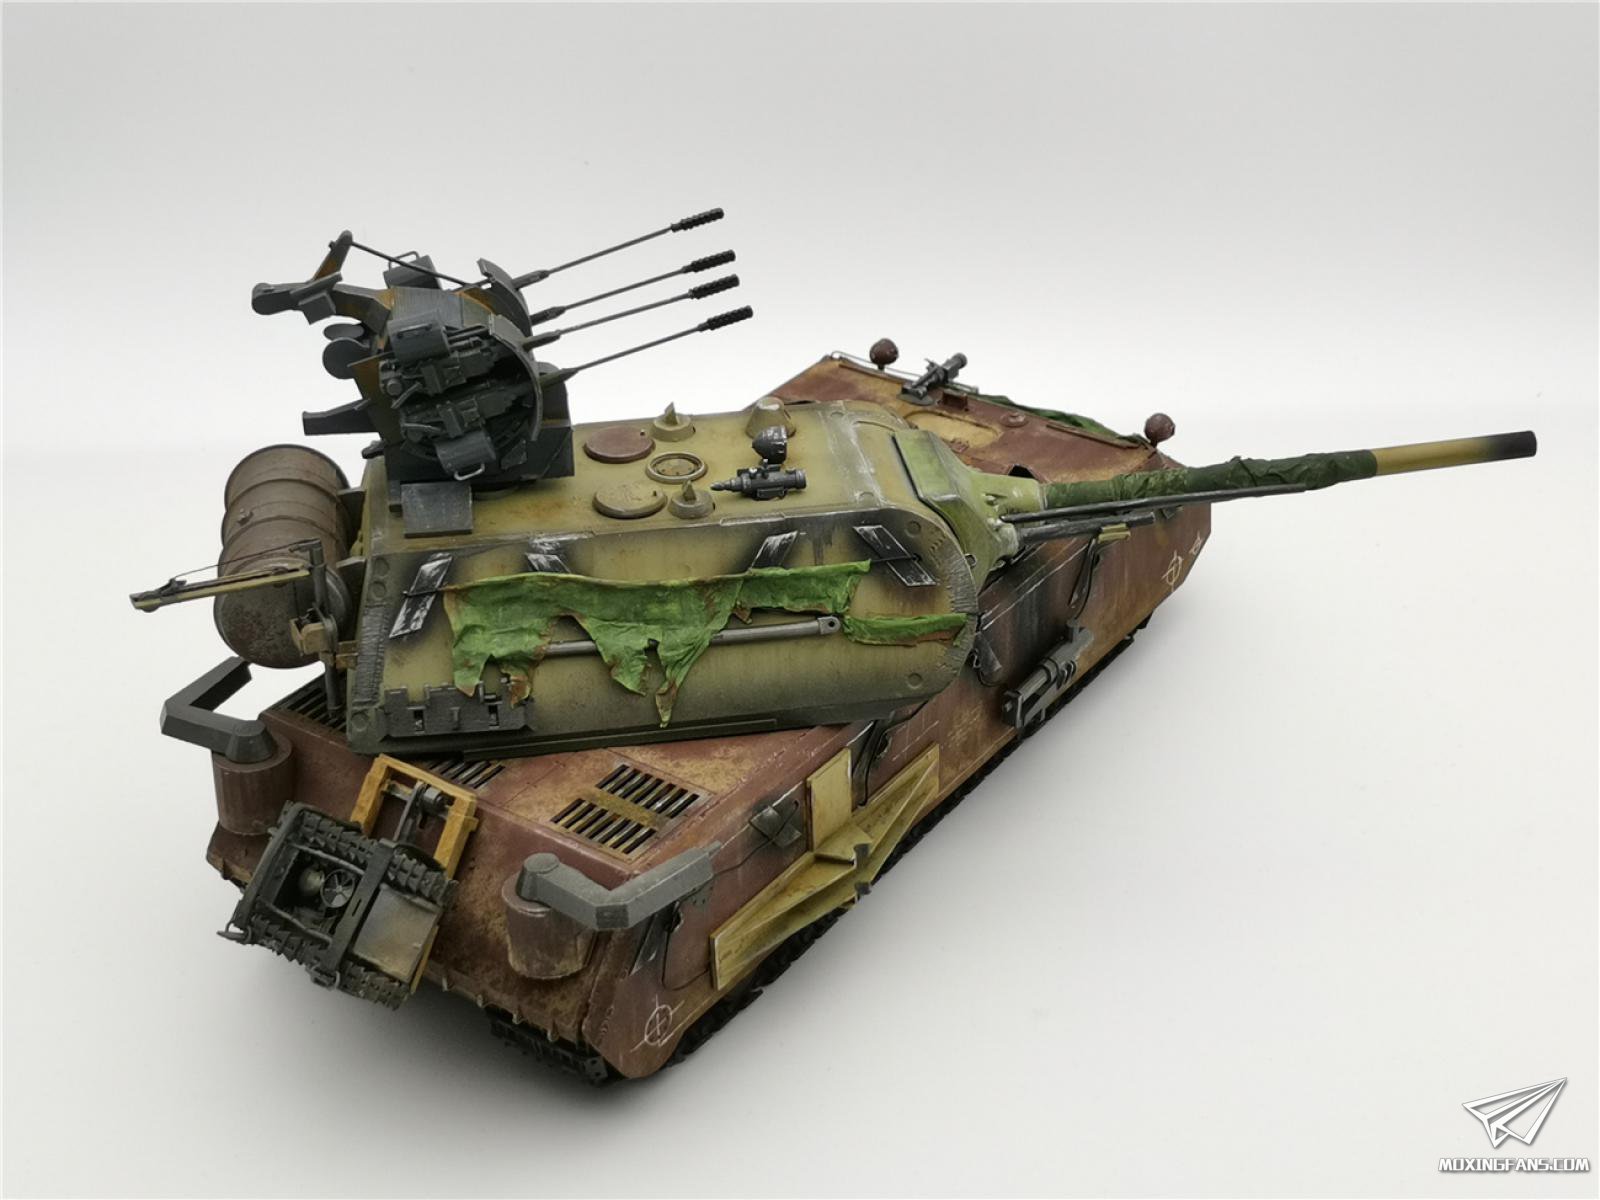 【Besiege】还原历史——鼠式超重型坦克_哔哩哔哩_bilibili